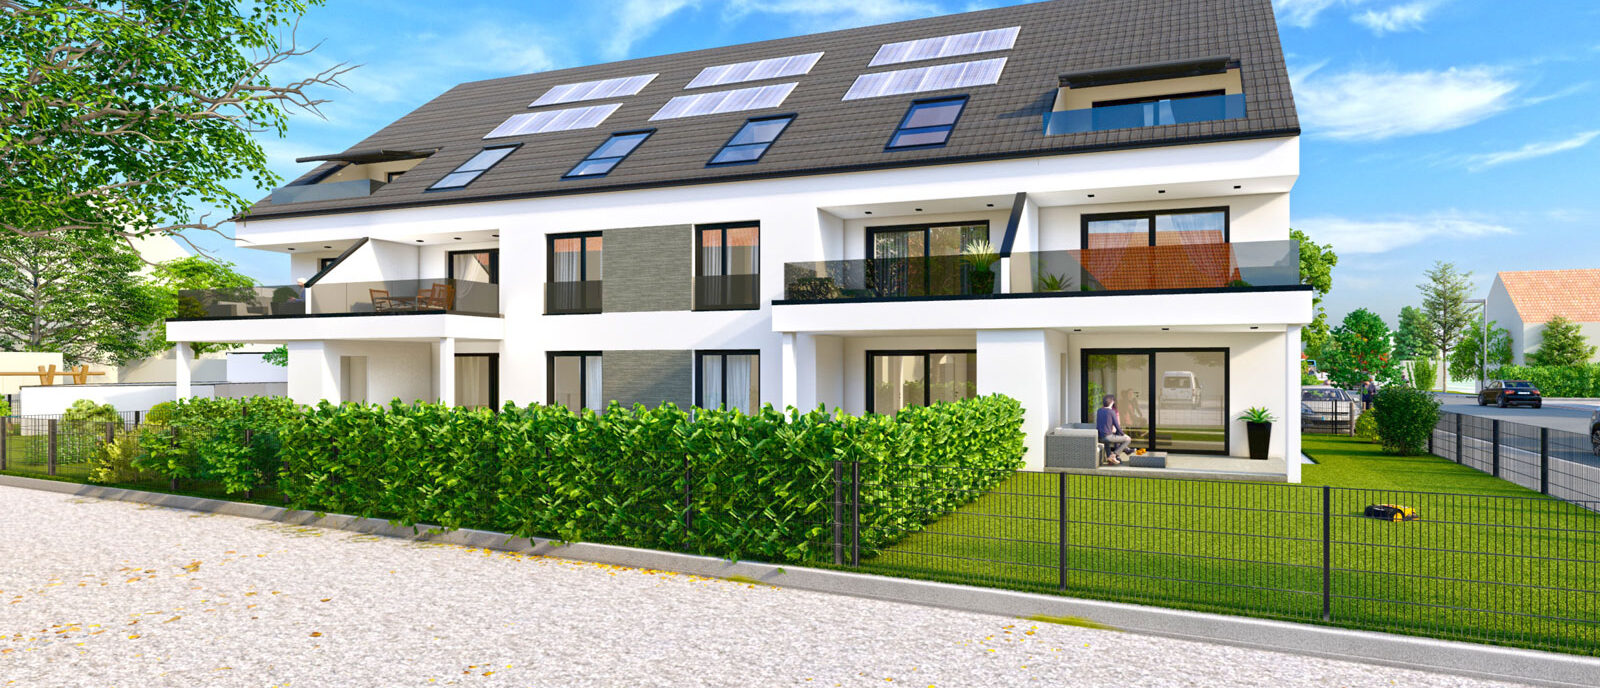 „IN Haunstetten“ baut die Communis Projektbau GmbH zehn moderne und qualitativ hochwertige Eigentumswohnungen.